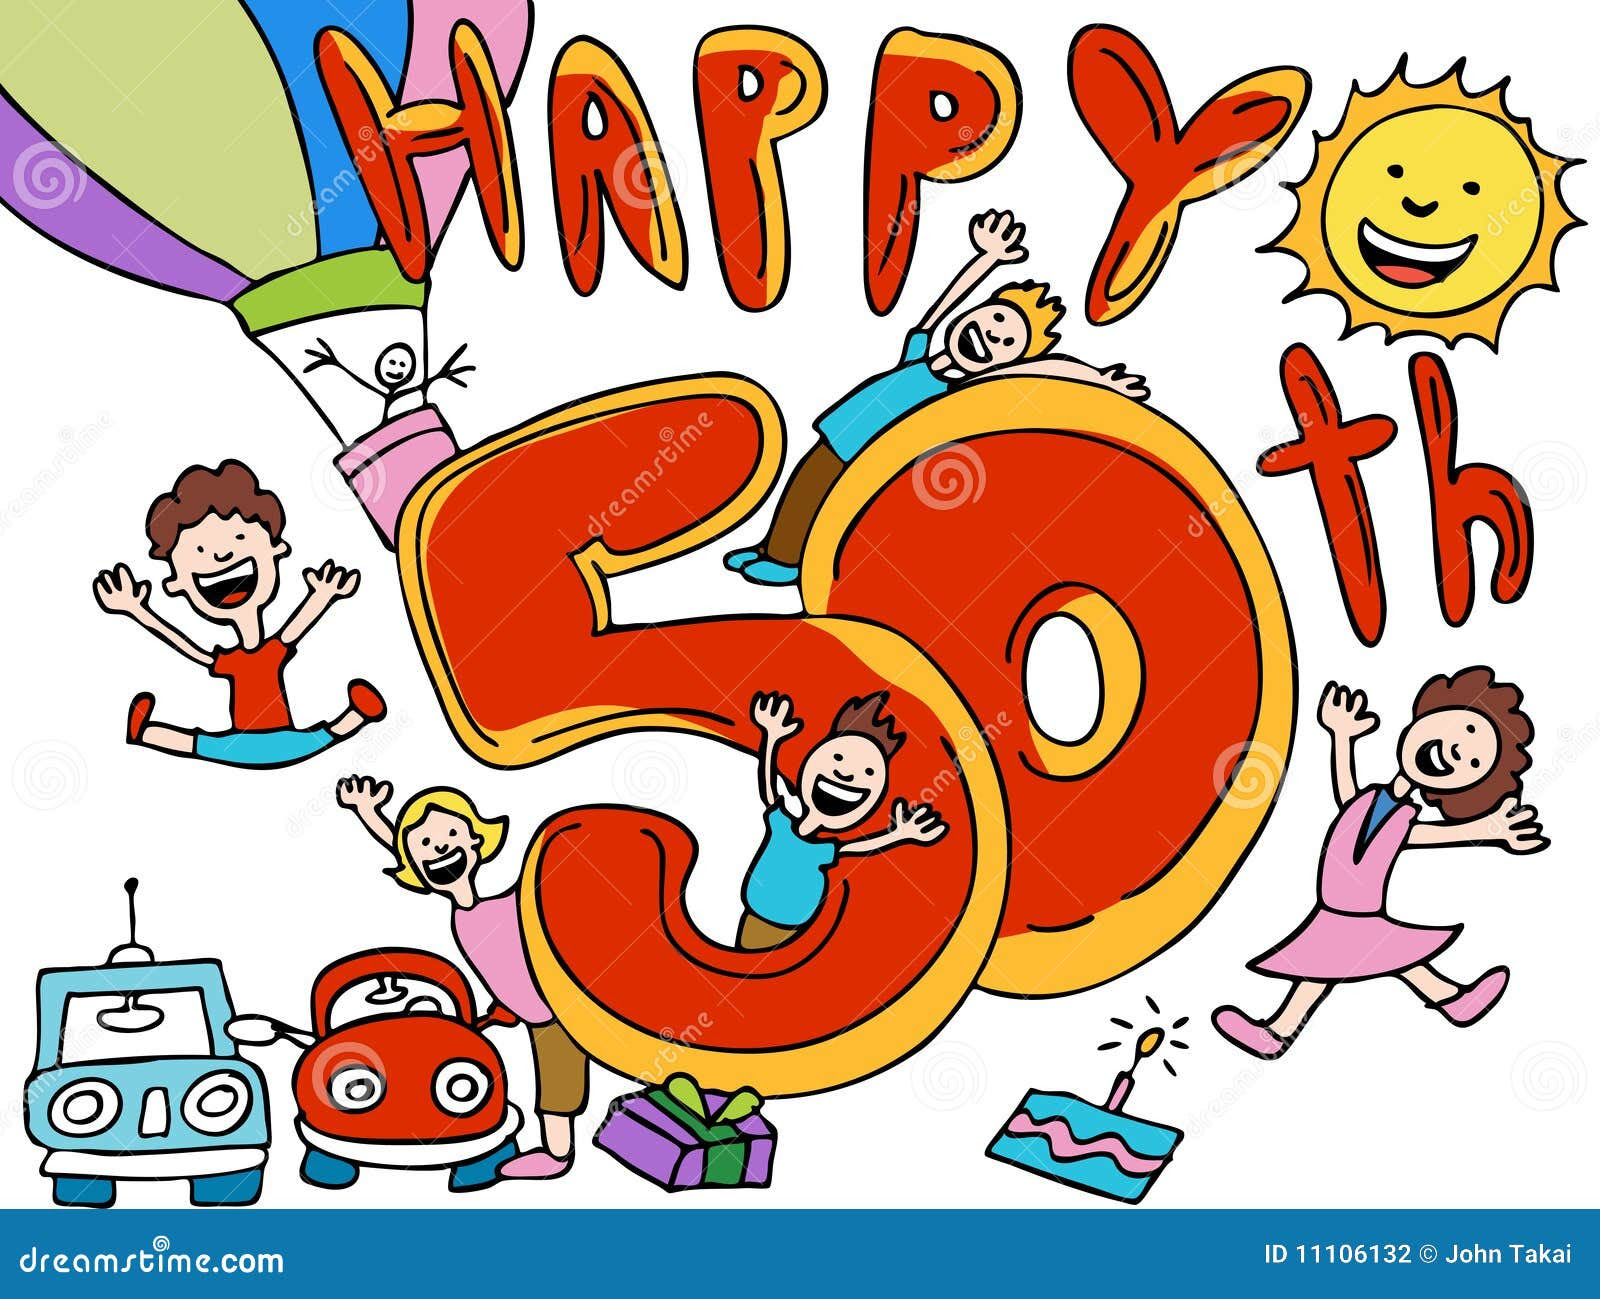 Alles Gute Zum Geburtstag Zum 50 50 Gute Geburtstagsspruche